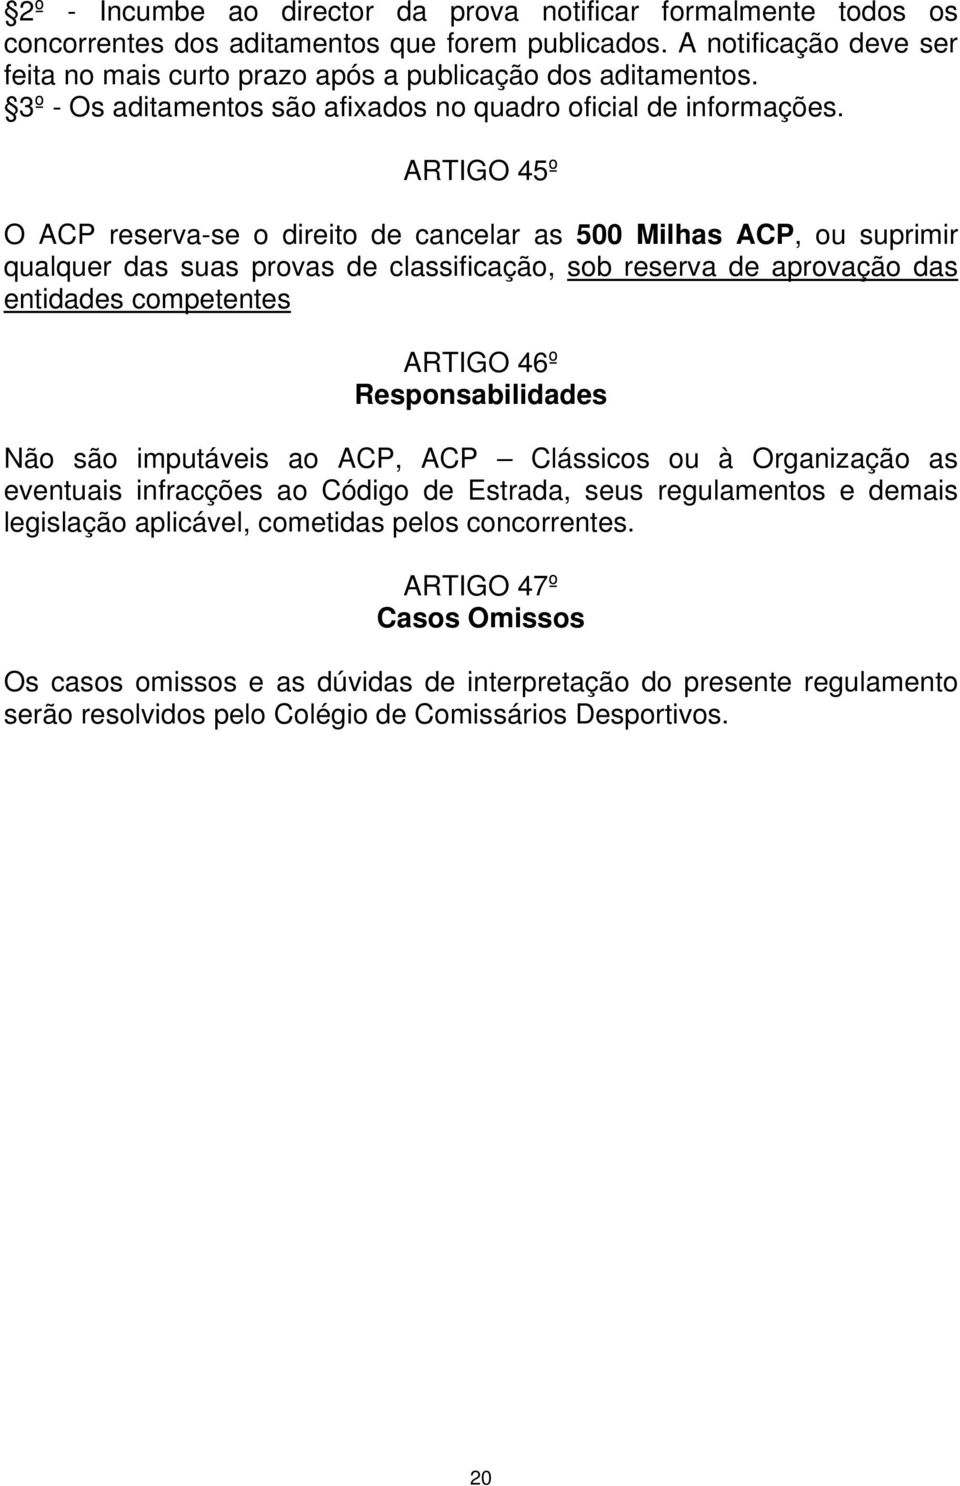 ARTIGO 45º O ACP reserva-se o direito de cancelar as 500 Milhas ACP, ou suprimir qualquer das suas provas de classificação, sob reserva de aprovação das entidades competentes ARTIGO 46º